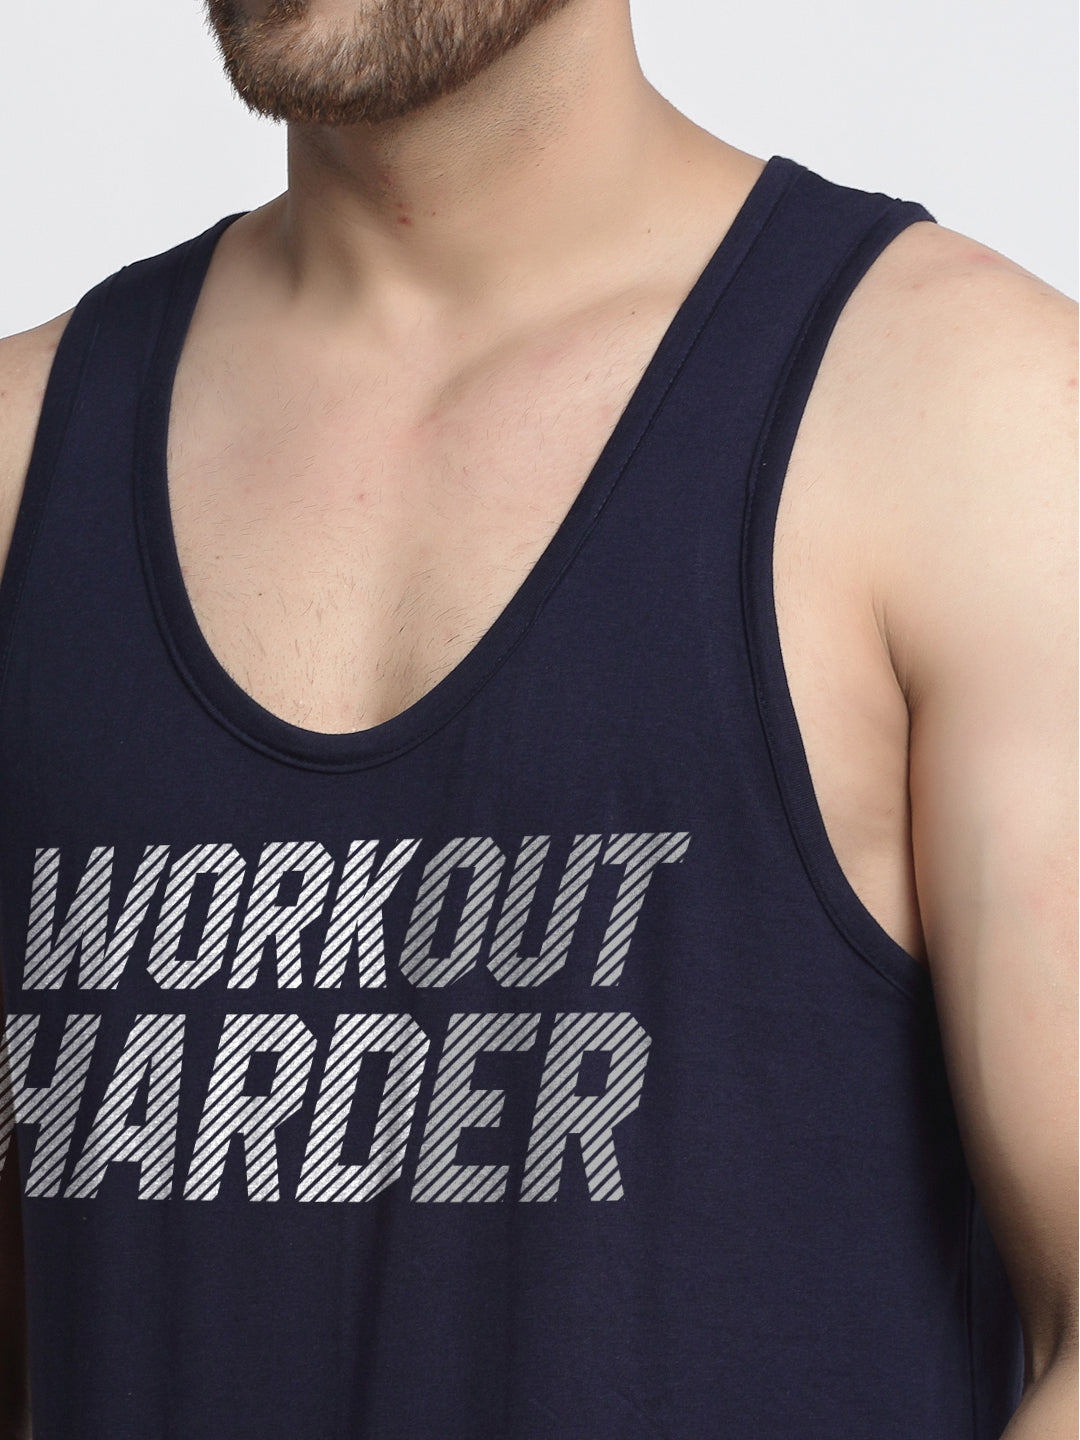 Men Workout Harder Innerwear Gym Vest - Friskers